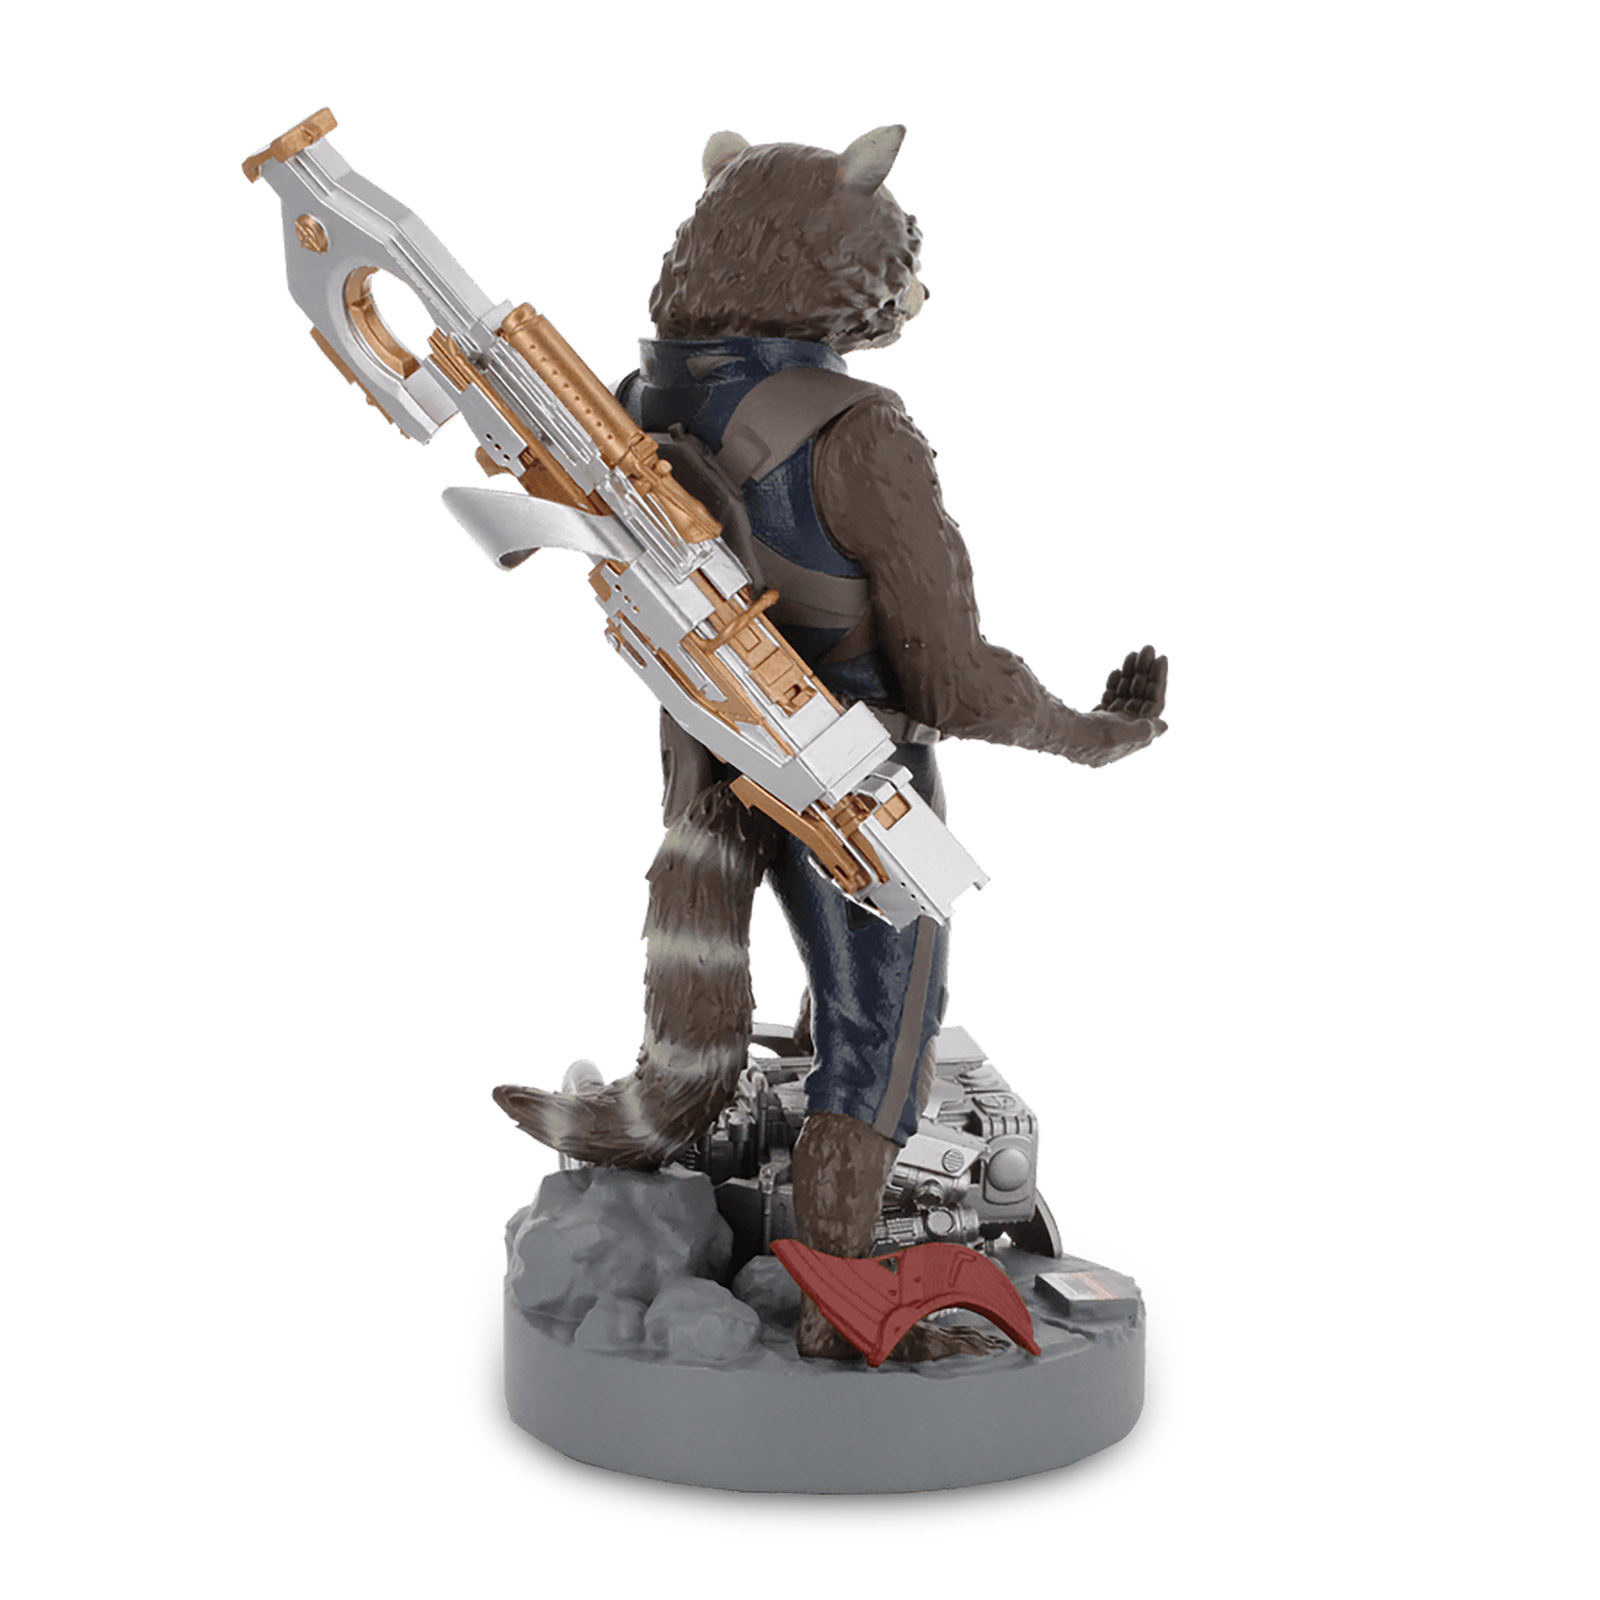 Les Gardiens de la Galaxie - Figurine Cable Guy Rocket Raccoon